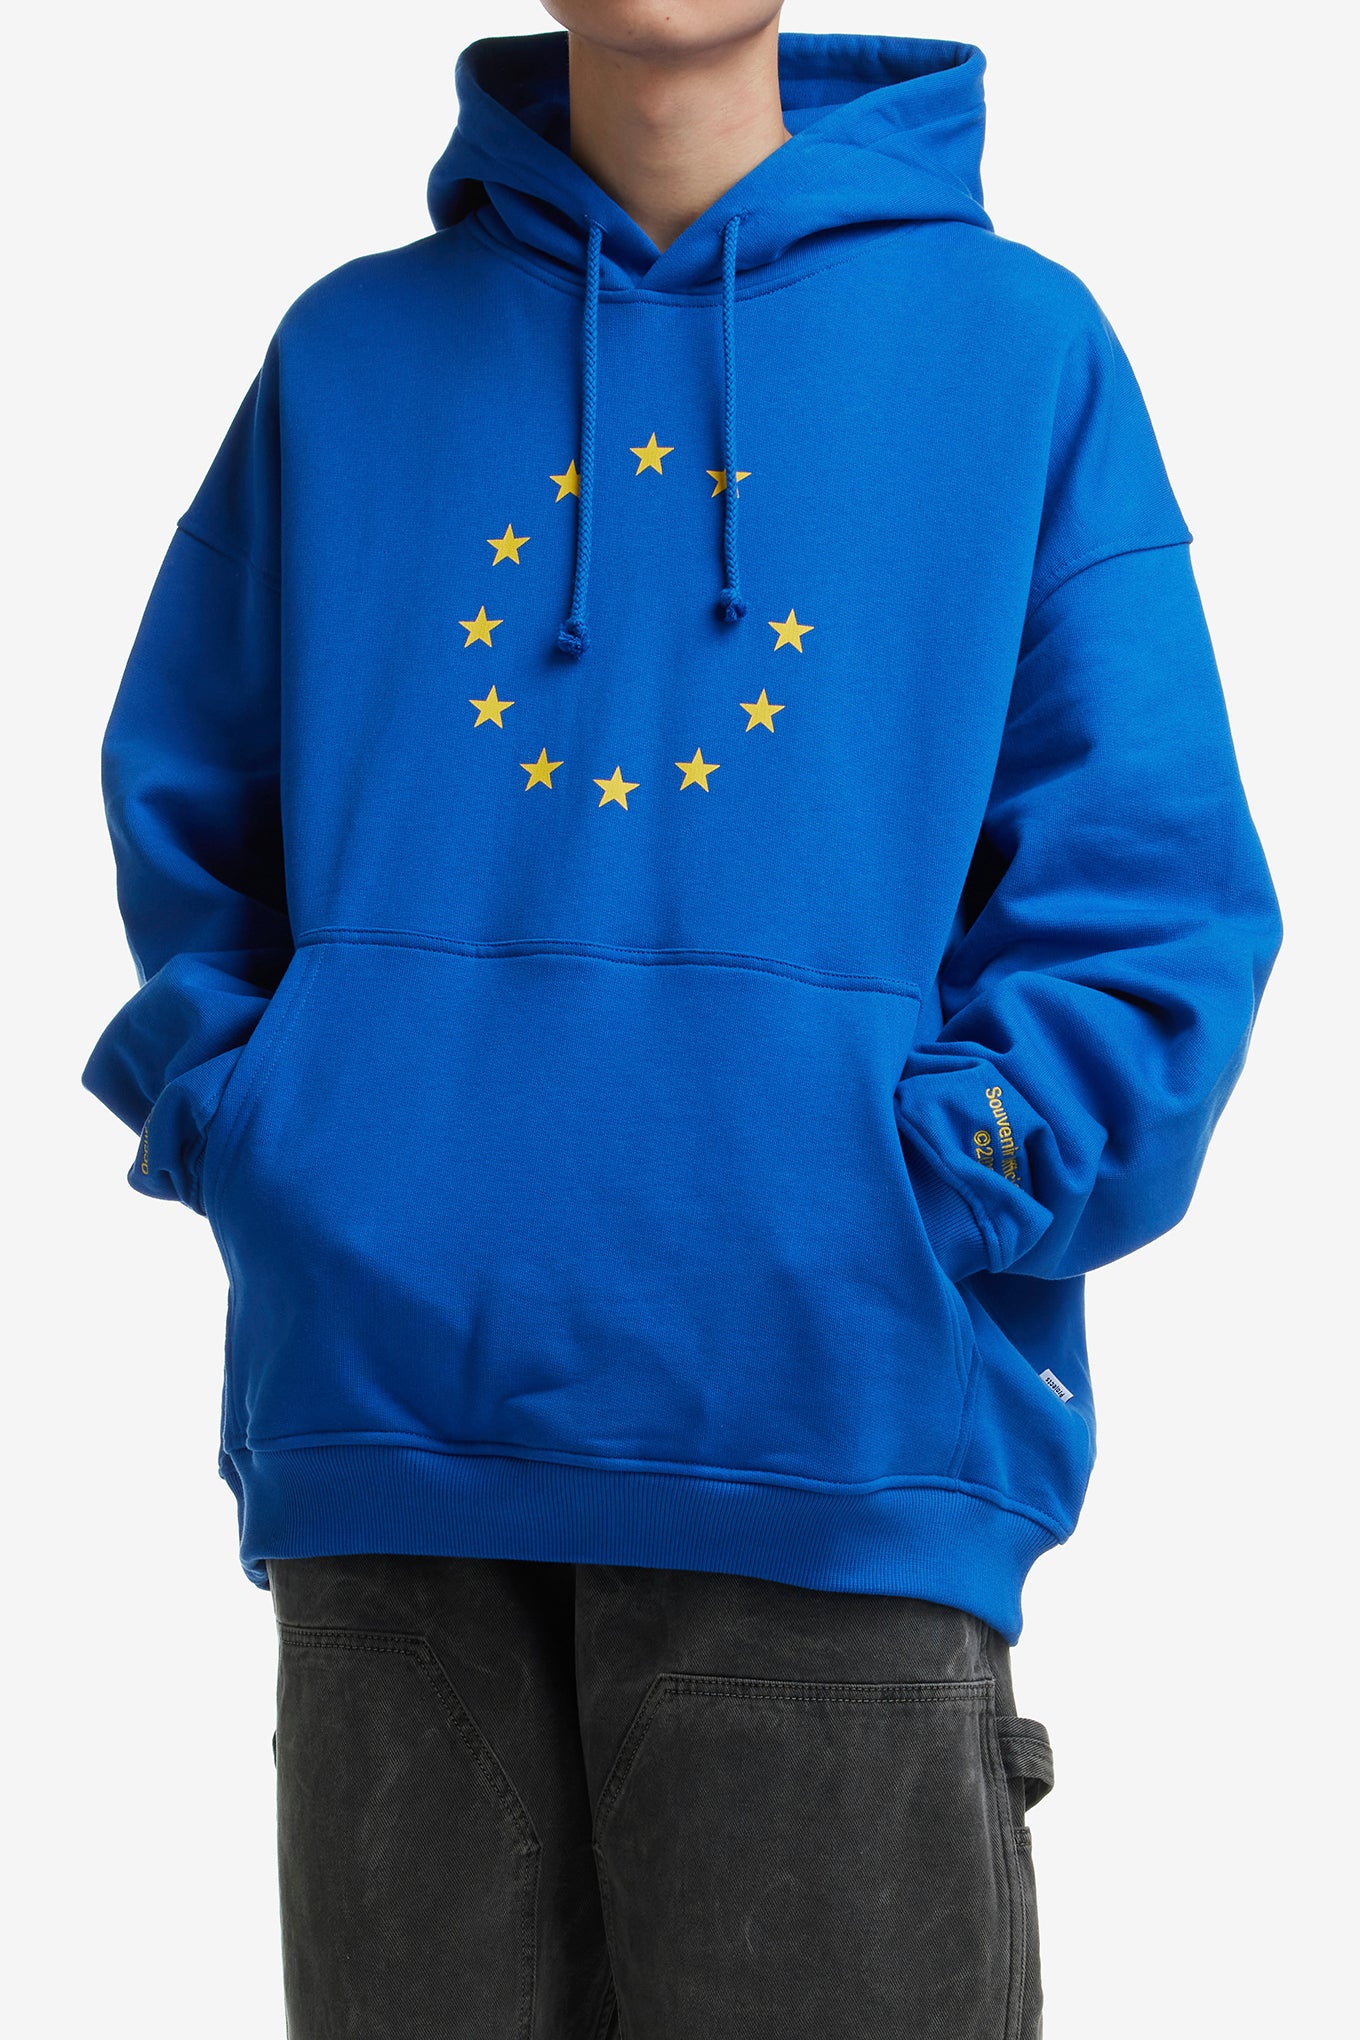 souvenir eunify hoodie blue L